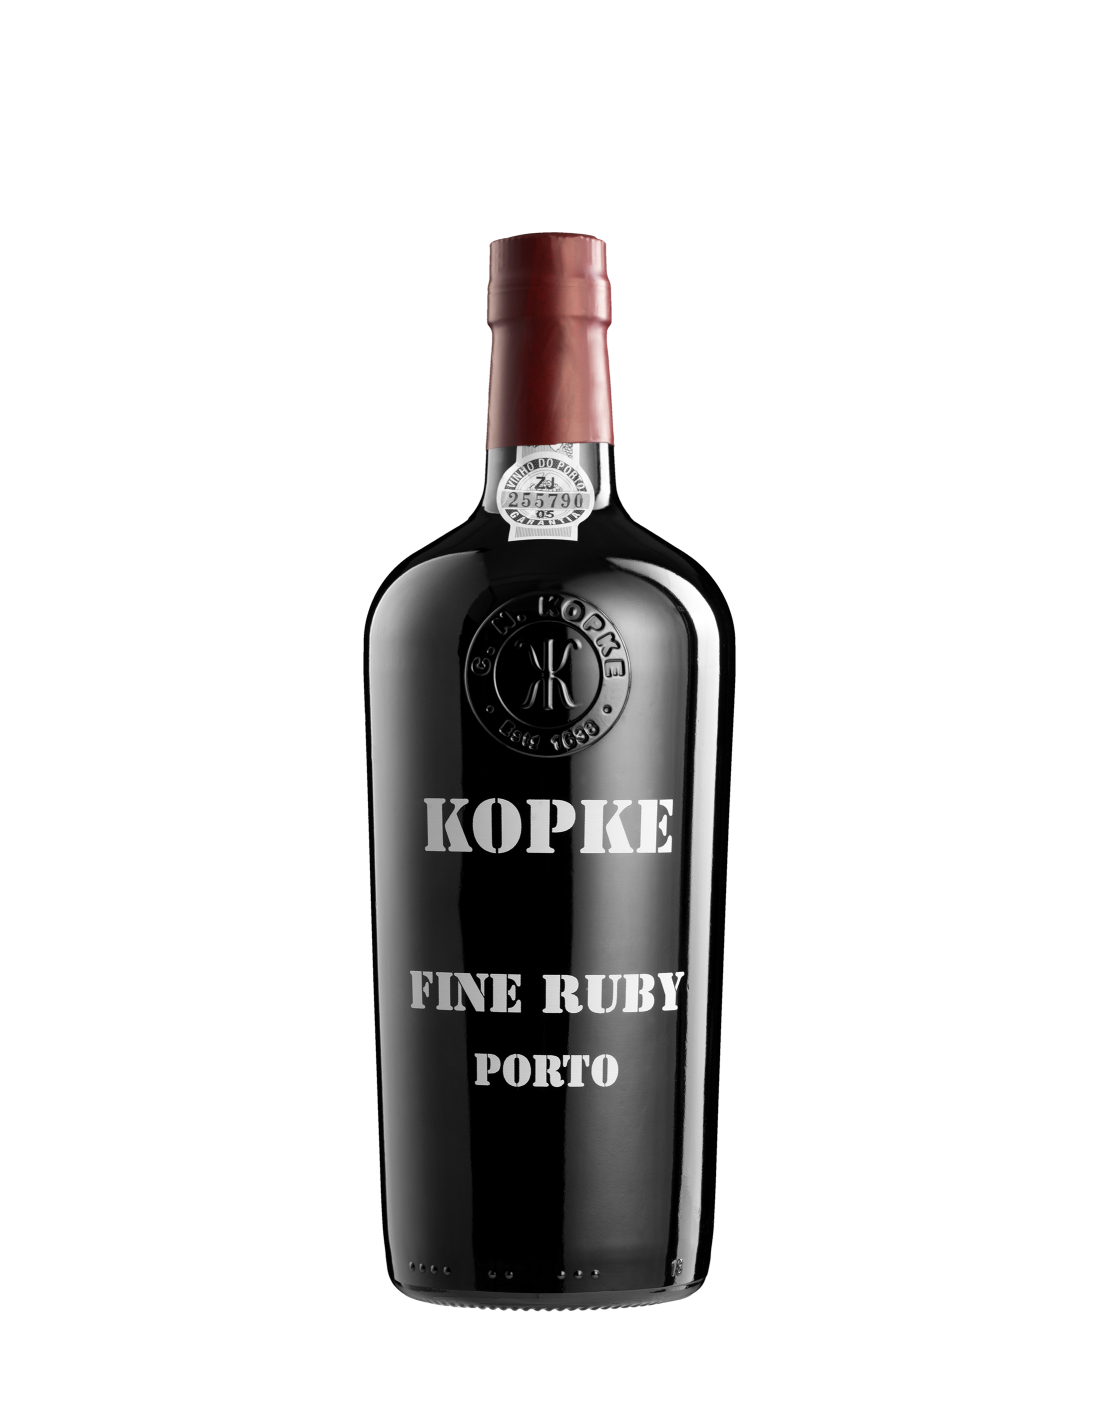 Vin porto rosu dulce Kopke Fine Ruby Douro, 0.75L, 19.5% alc., Portugalia alcooldiscount.ro